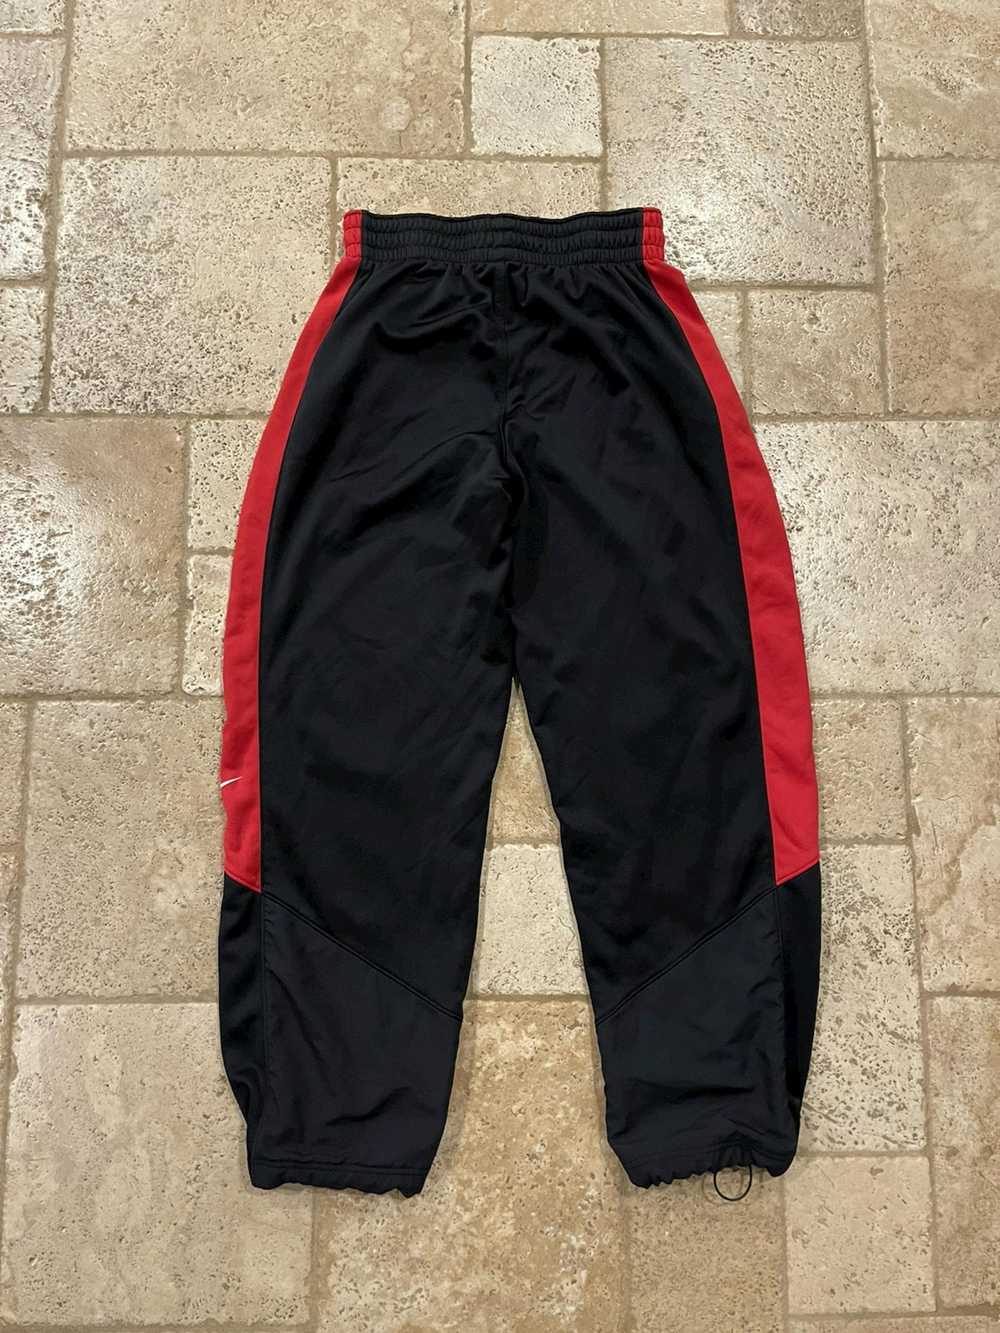 Nike Nike Black/Red/White Jogger Pants - image 2